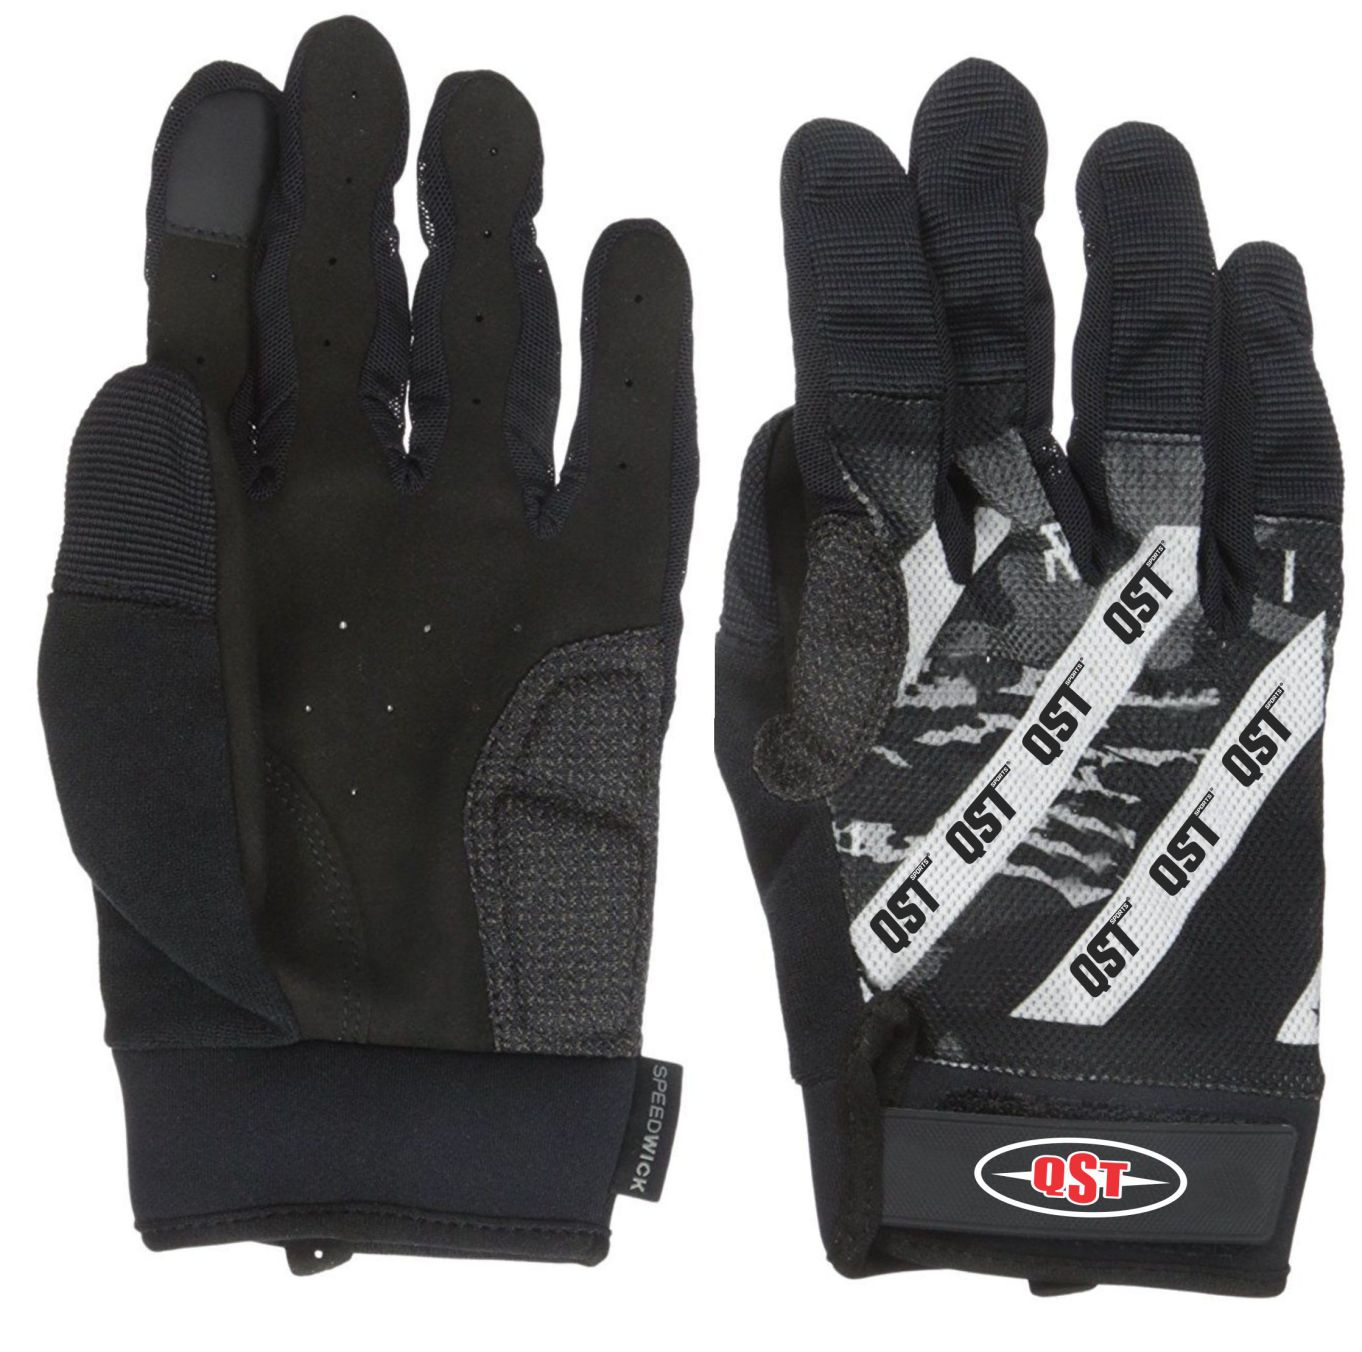 Crossfit Full finger Gloves - ACS-1561